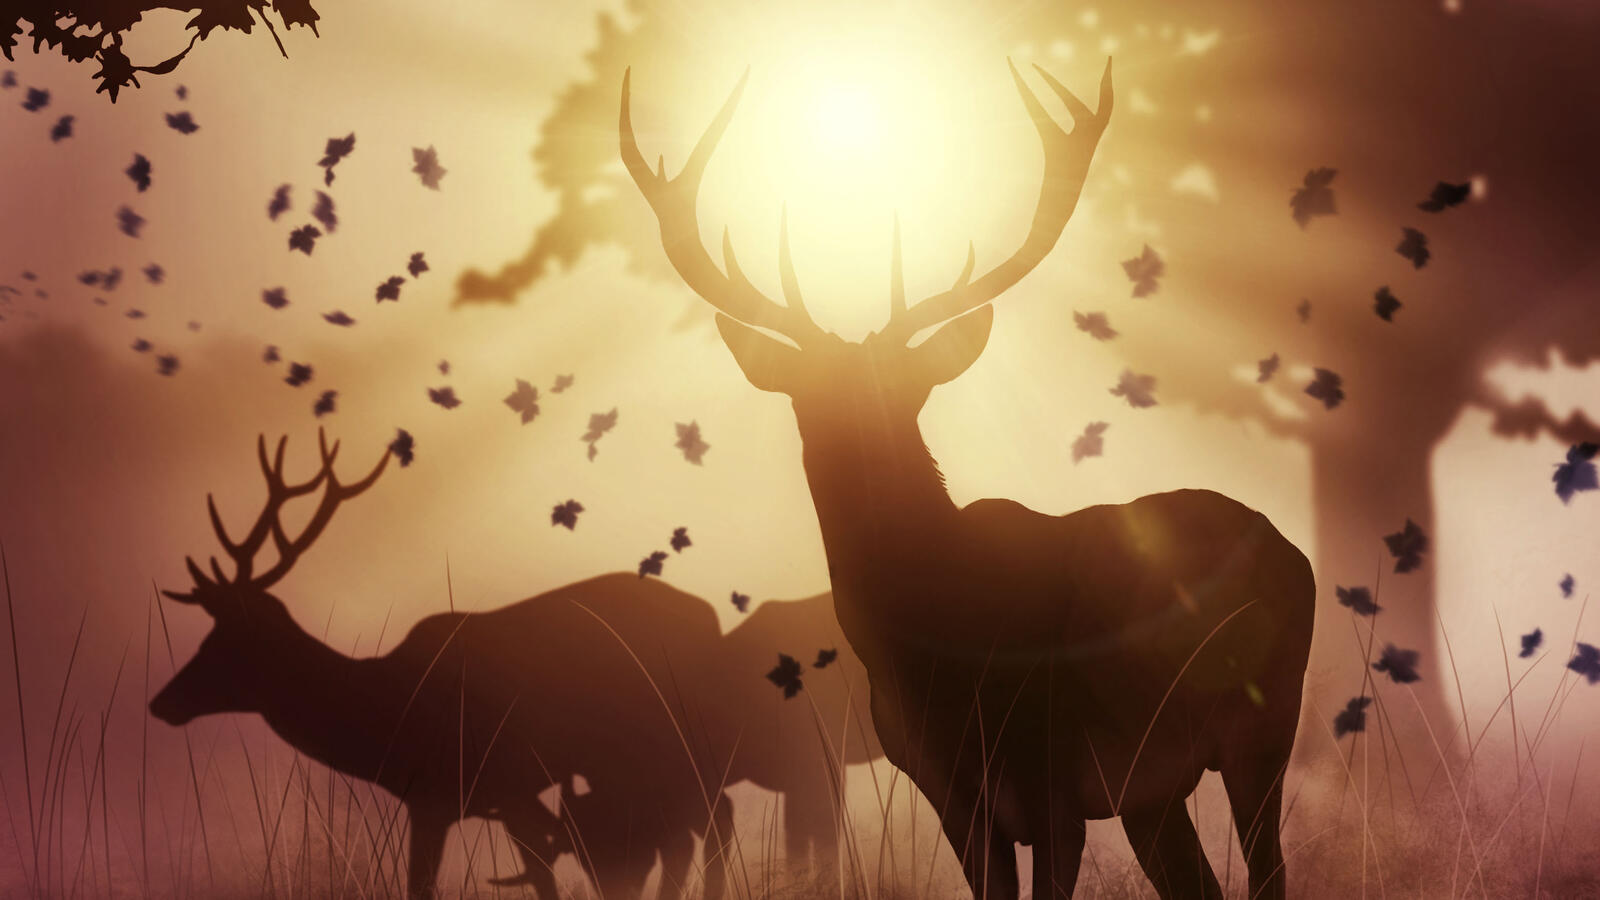 Wallpapers deer artist animals on the desktop